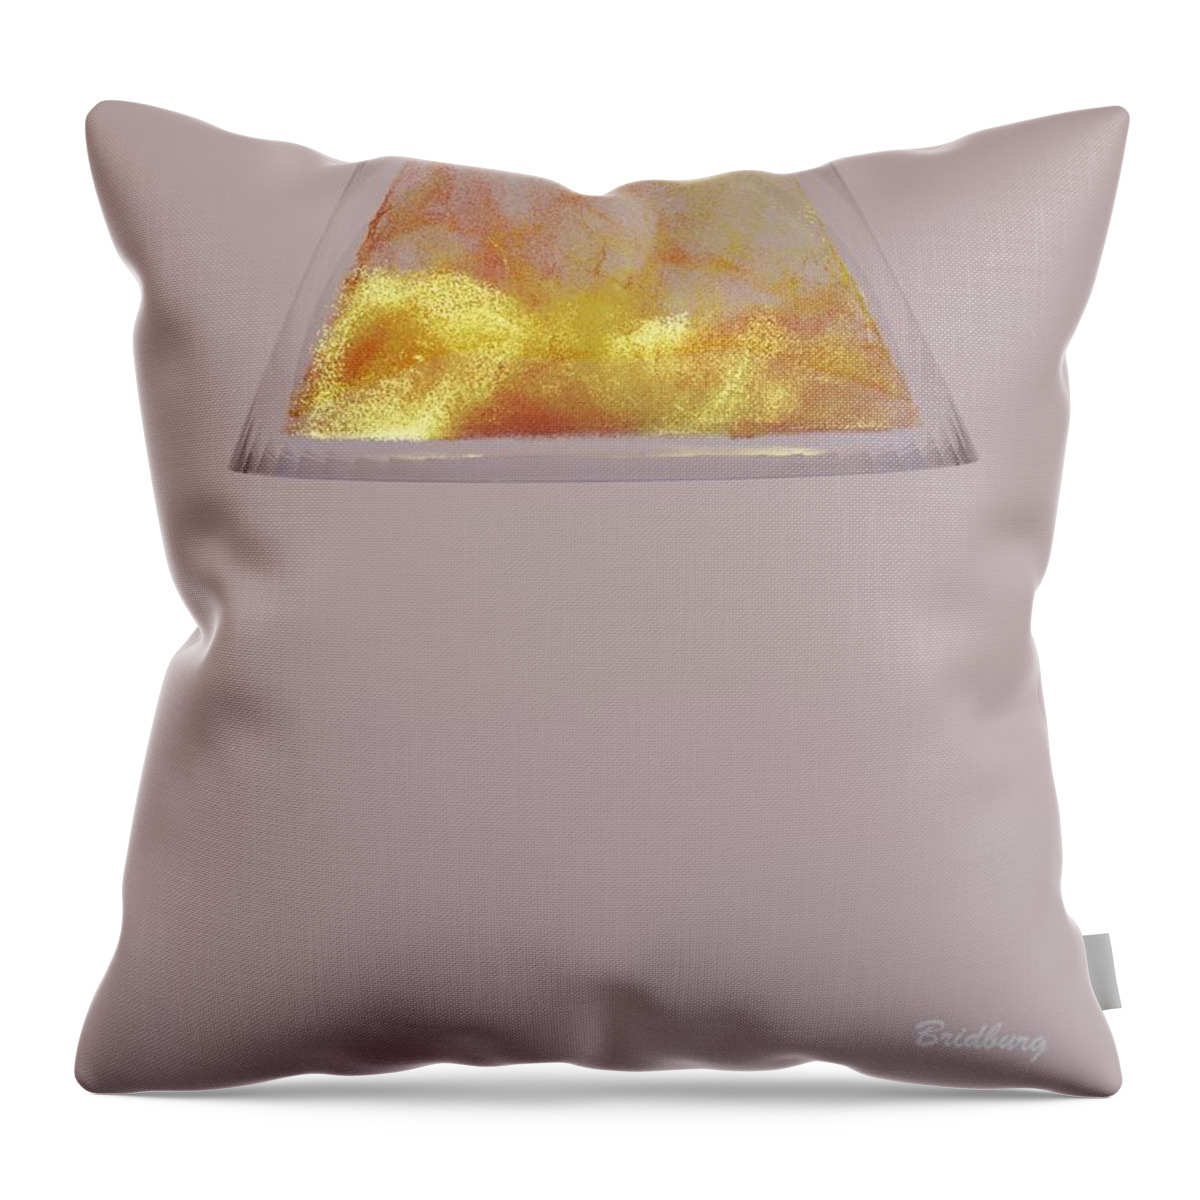 Lamp Shade Throw Pillow featuring the digital art 801 Lamp Shade Waves by David Bridburg